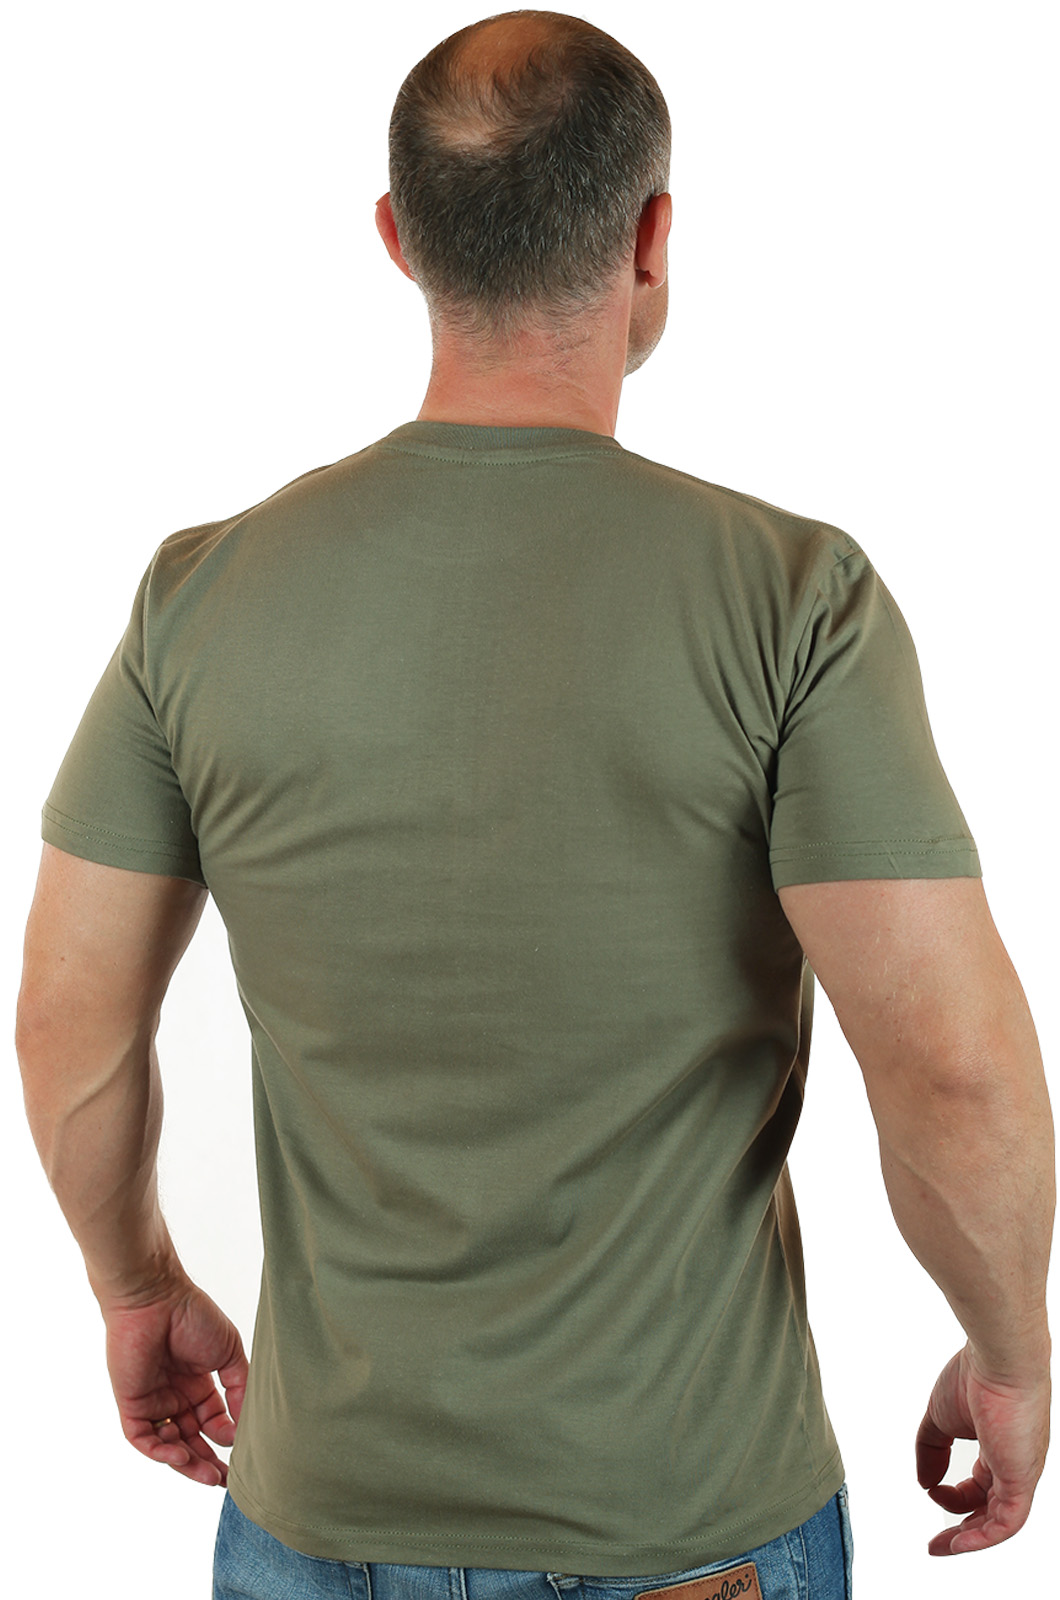 Классическая армейская футболка Спецназ ГРУ отлично подойдёт к шортам или джинсам. В ней можно пойти на прогулку, отправиться на пикник или просто выехать на природу.